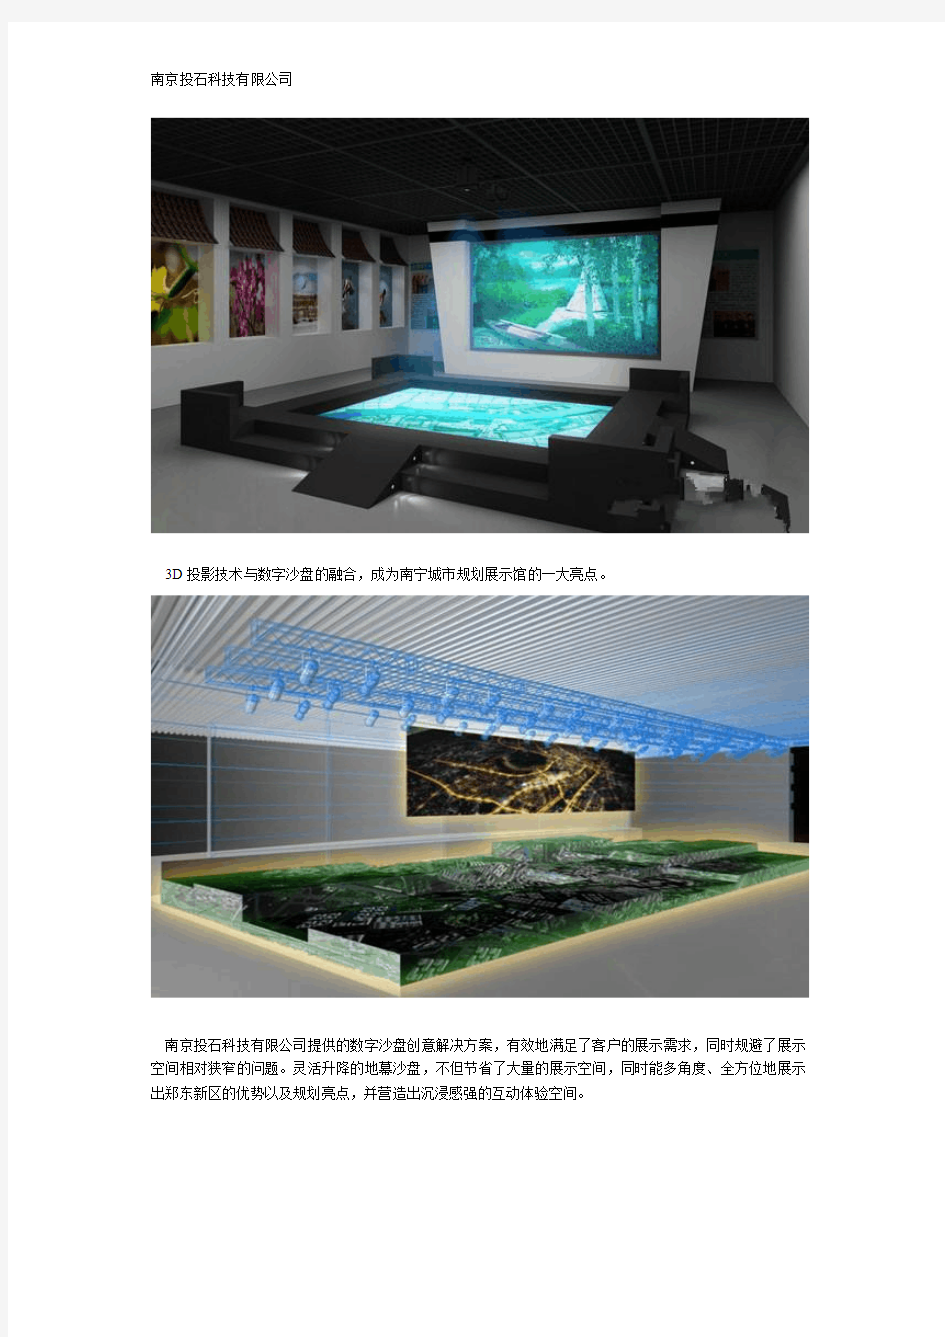 南宁市城市规划展示馆引入3D数字沙盘